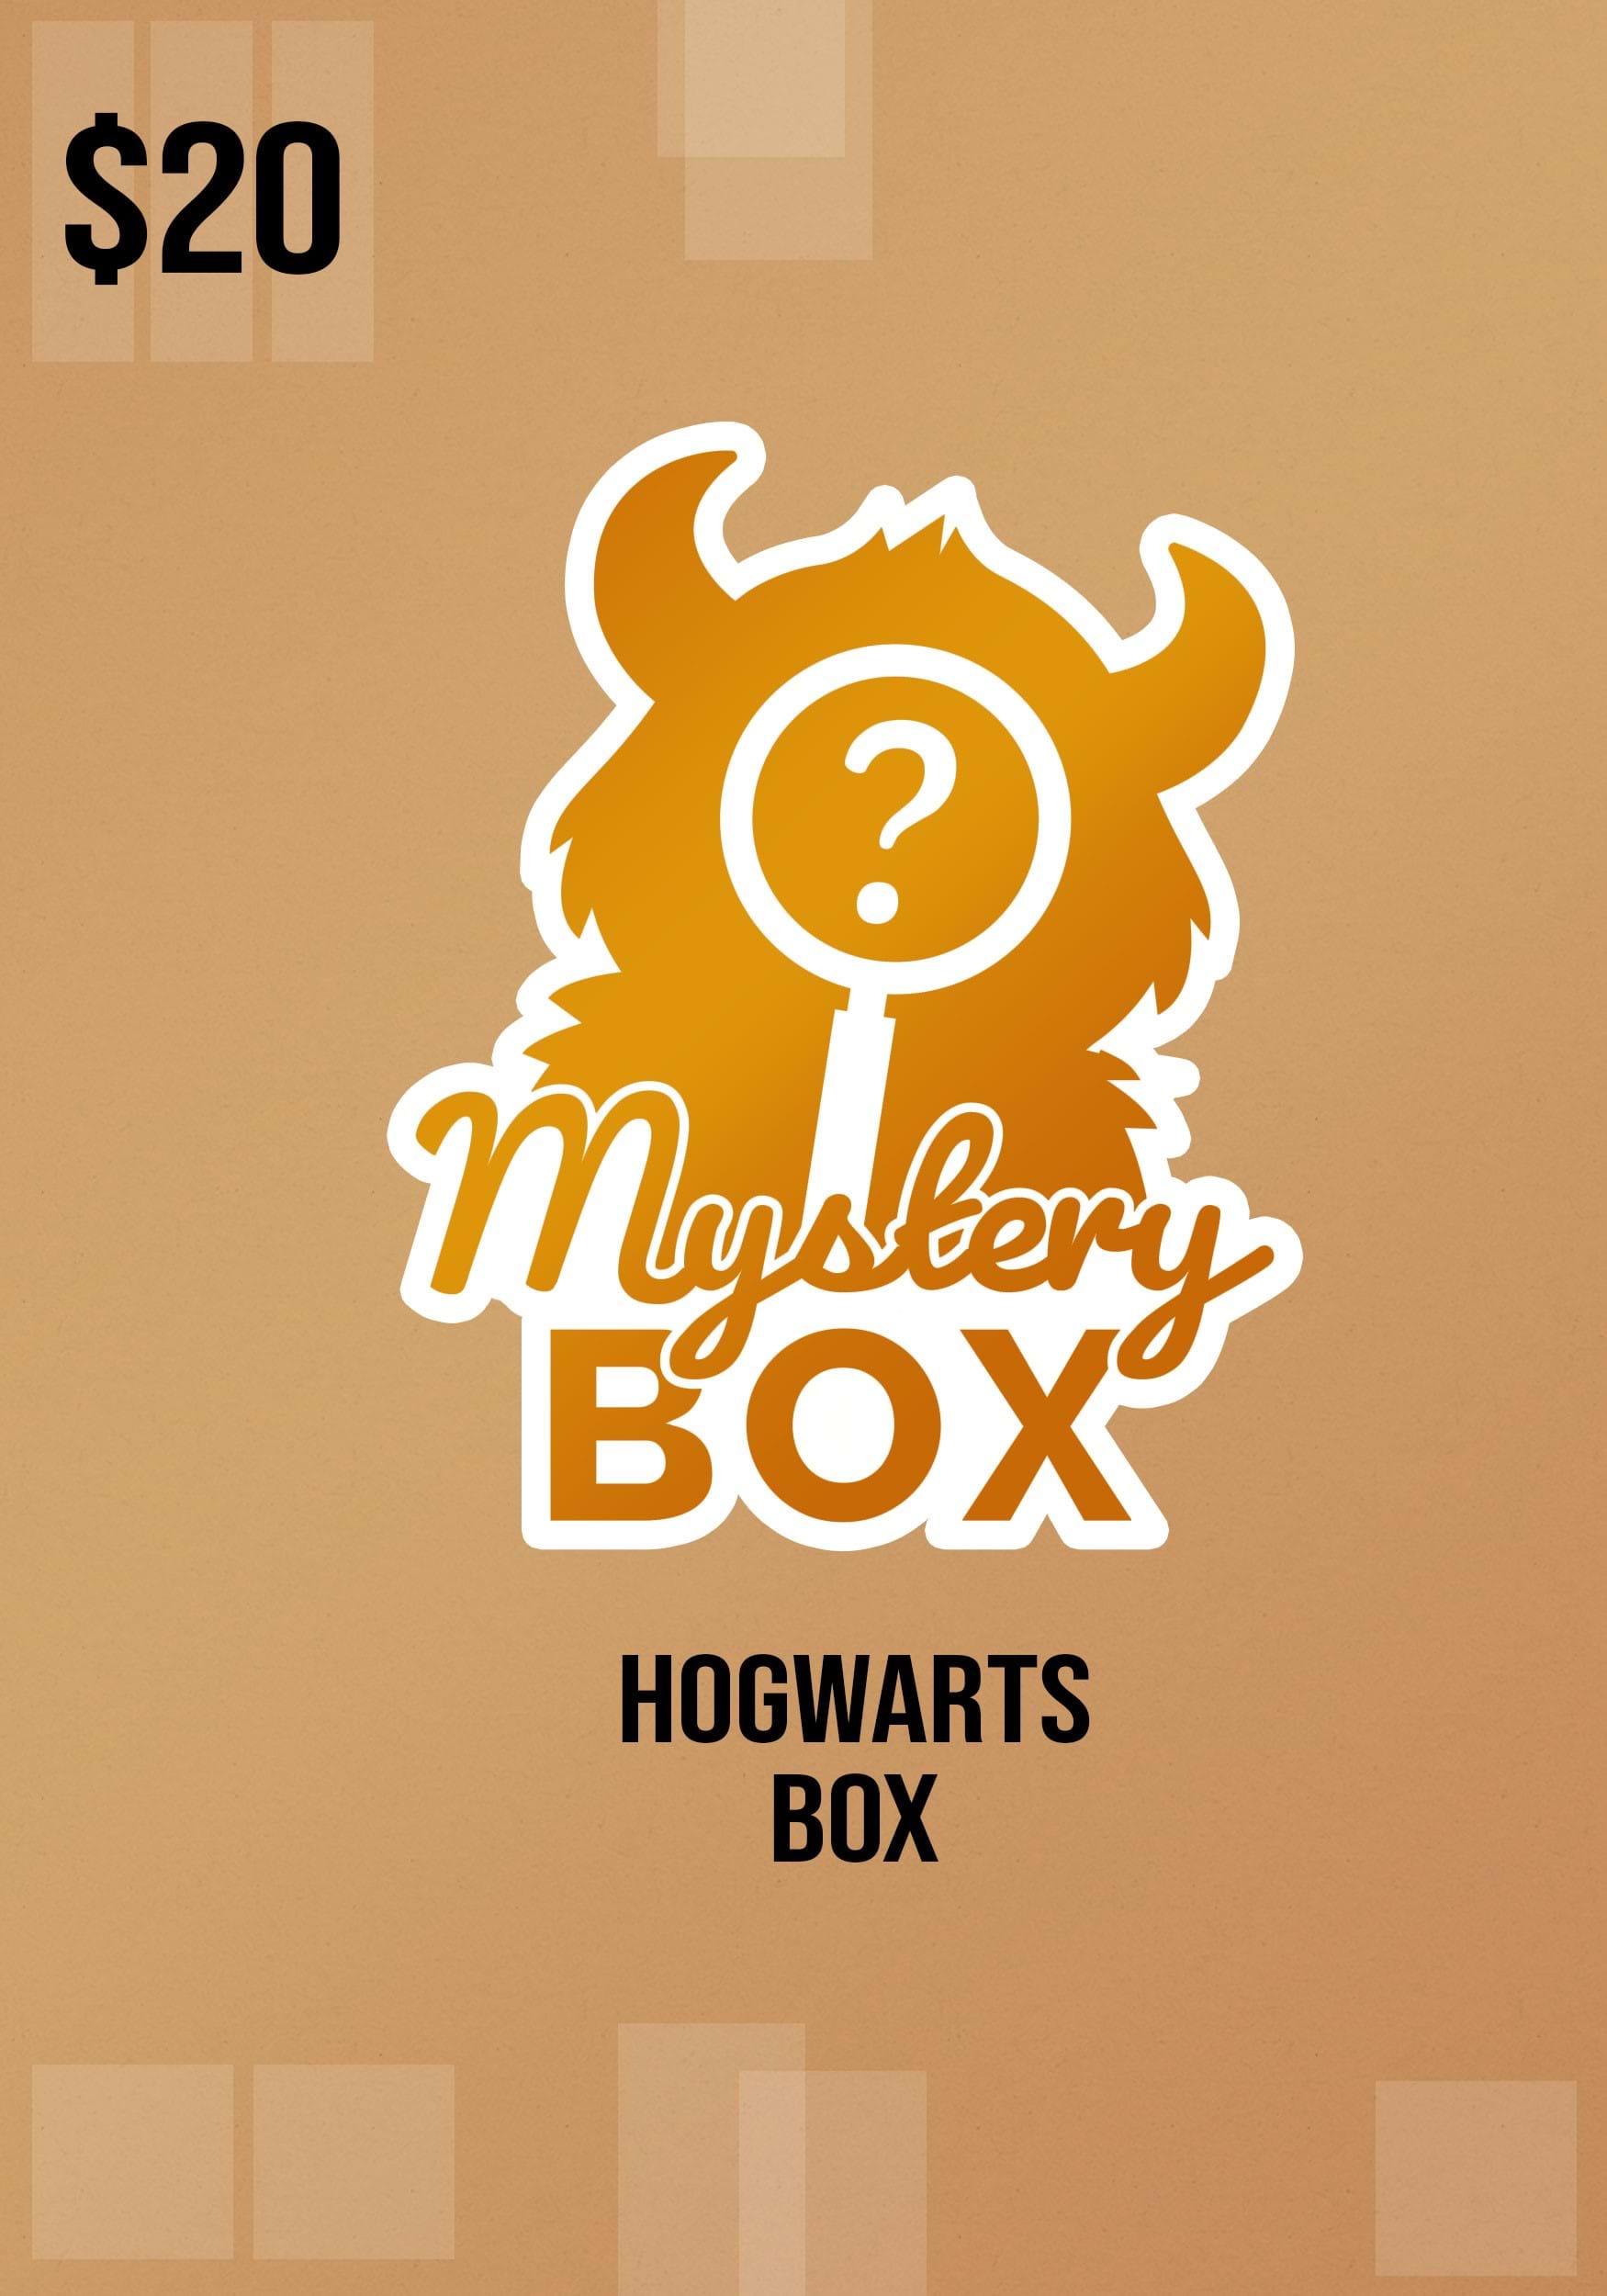 12 Best Harry Potter Gifts for Men: Enchanting Finds (2024)